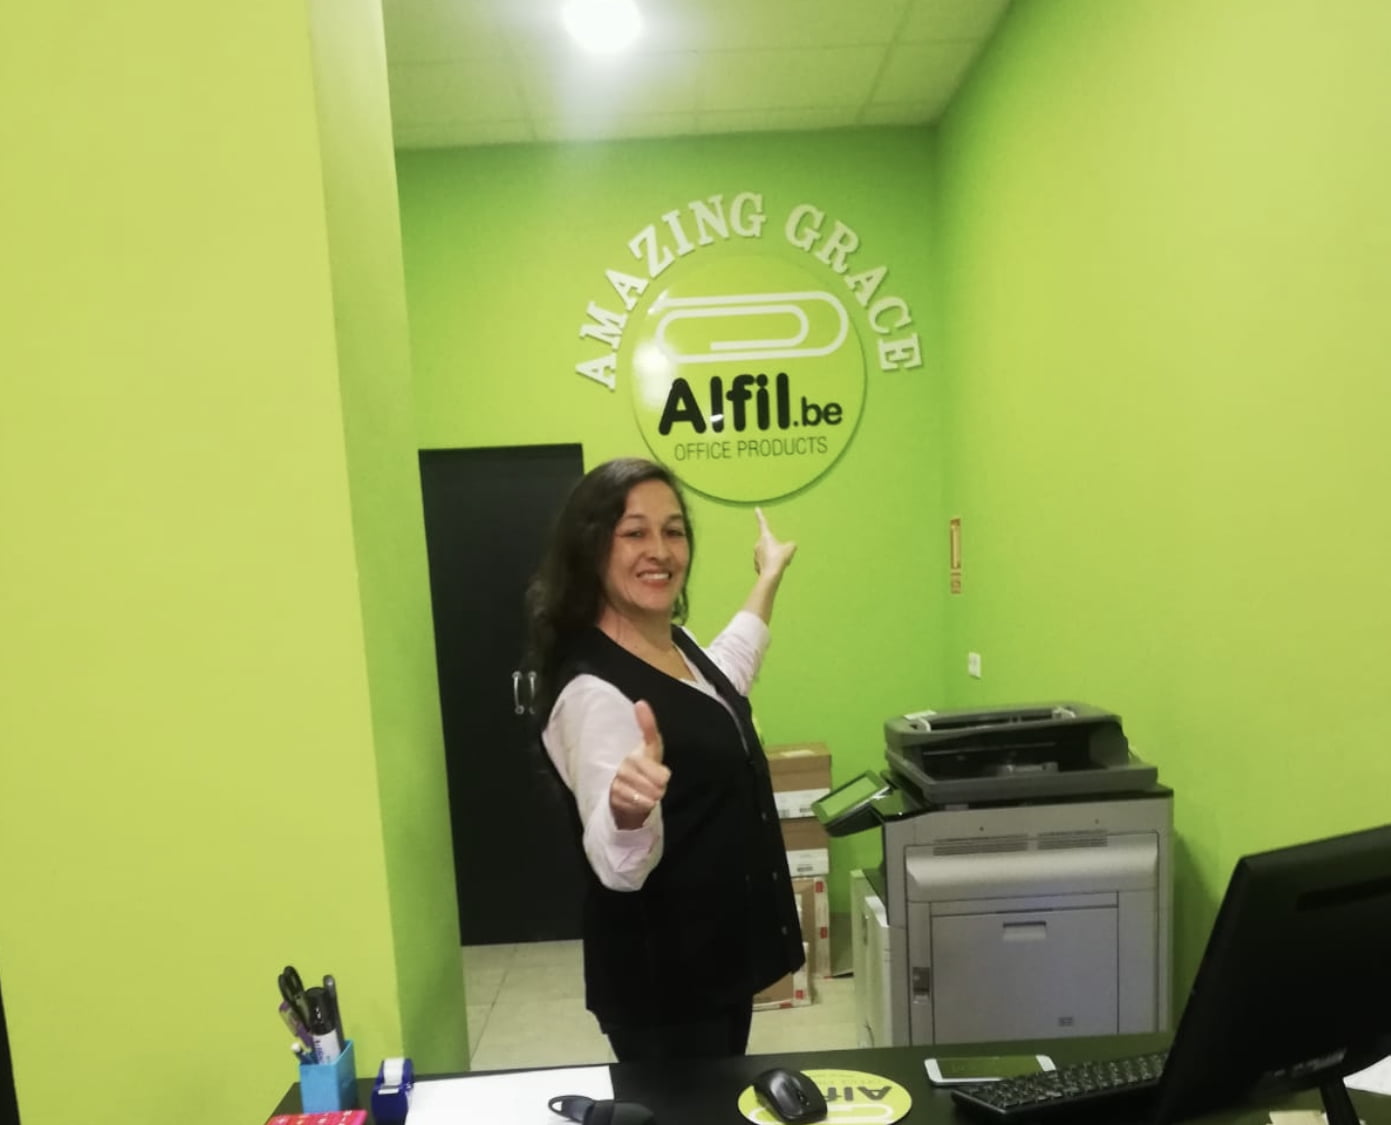 Franquicia Alfil.be sl: Inauguración de papelería en Alhaurin de la Torre